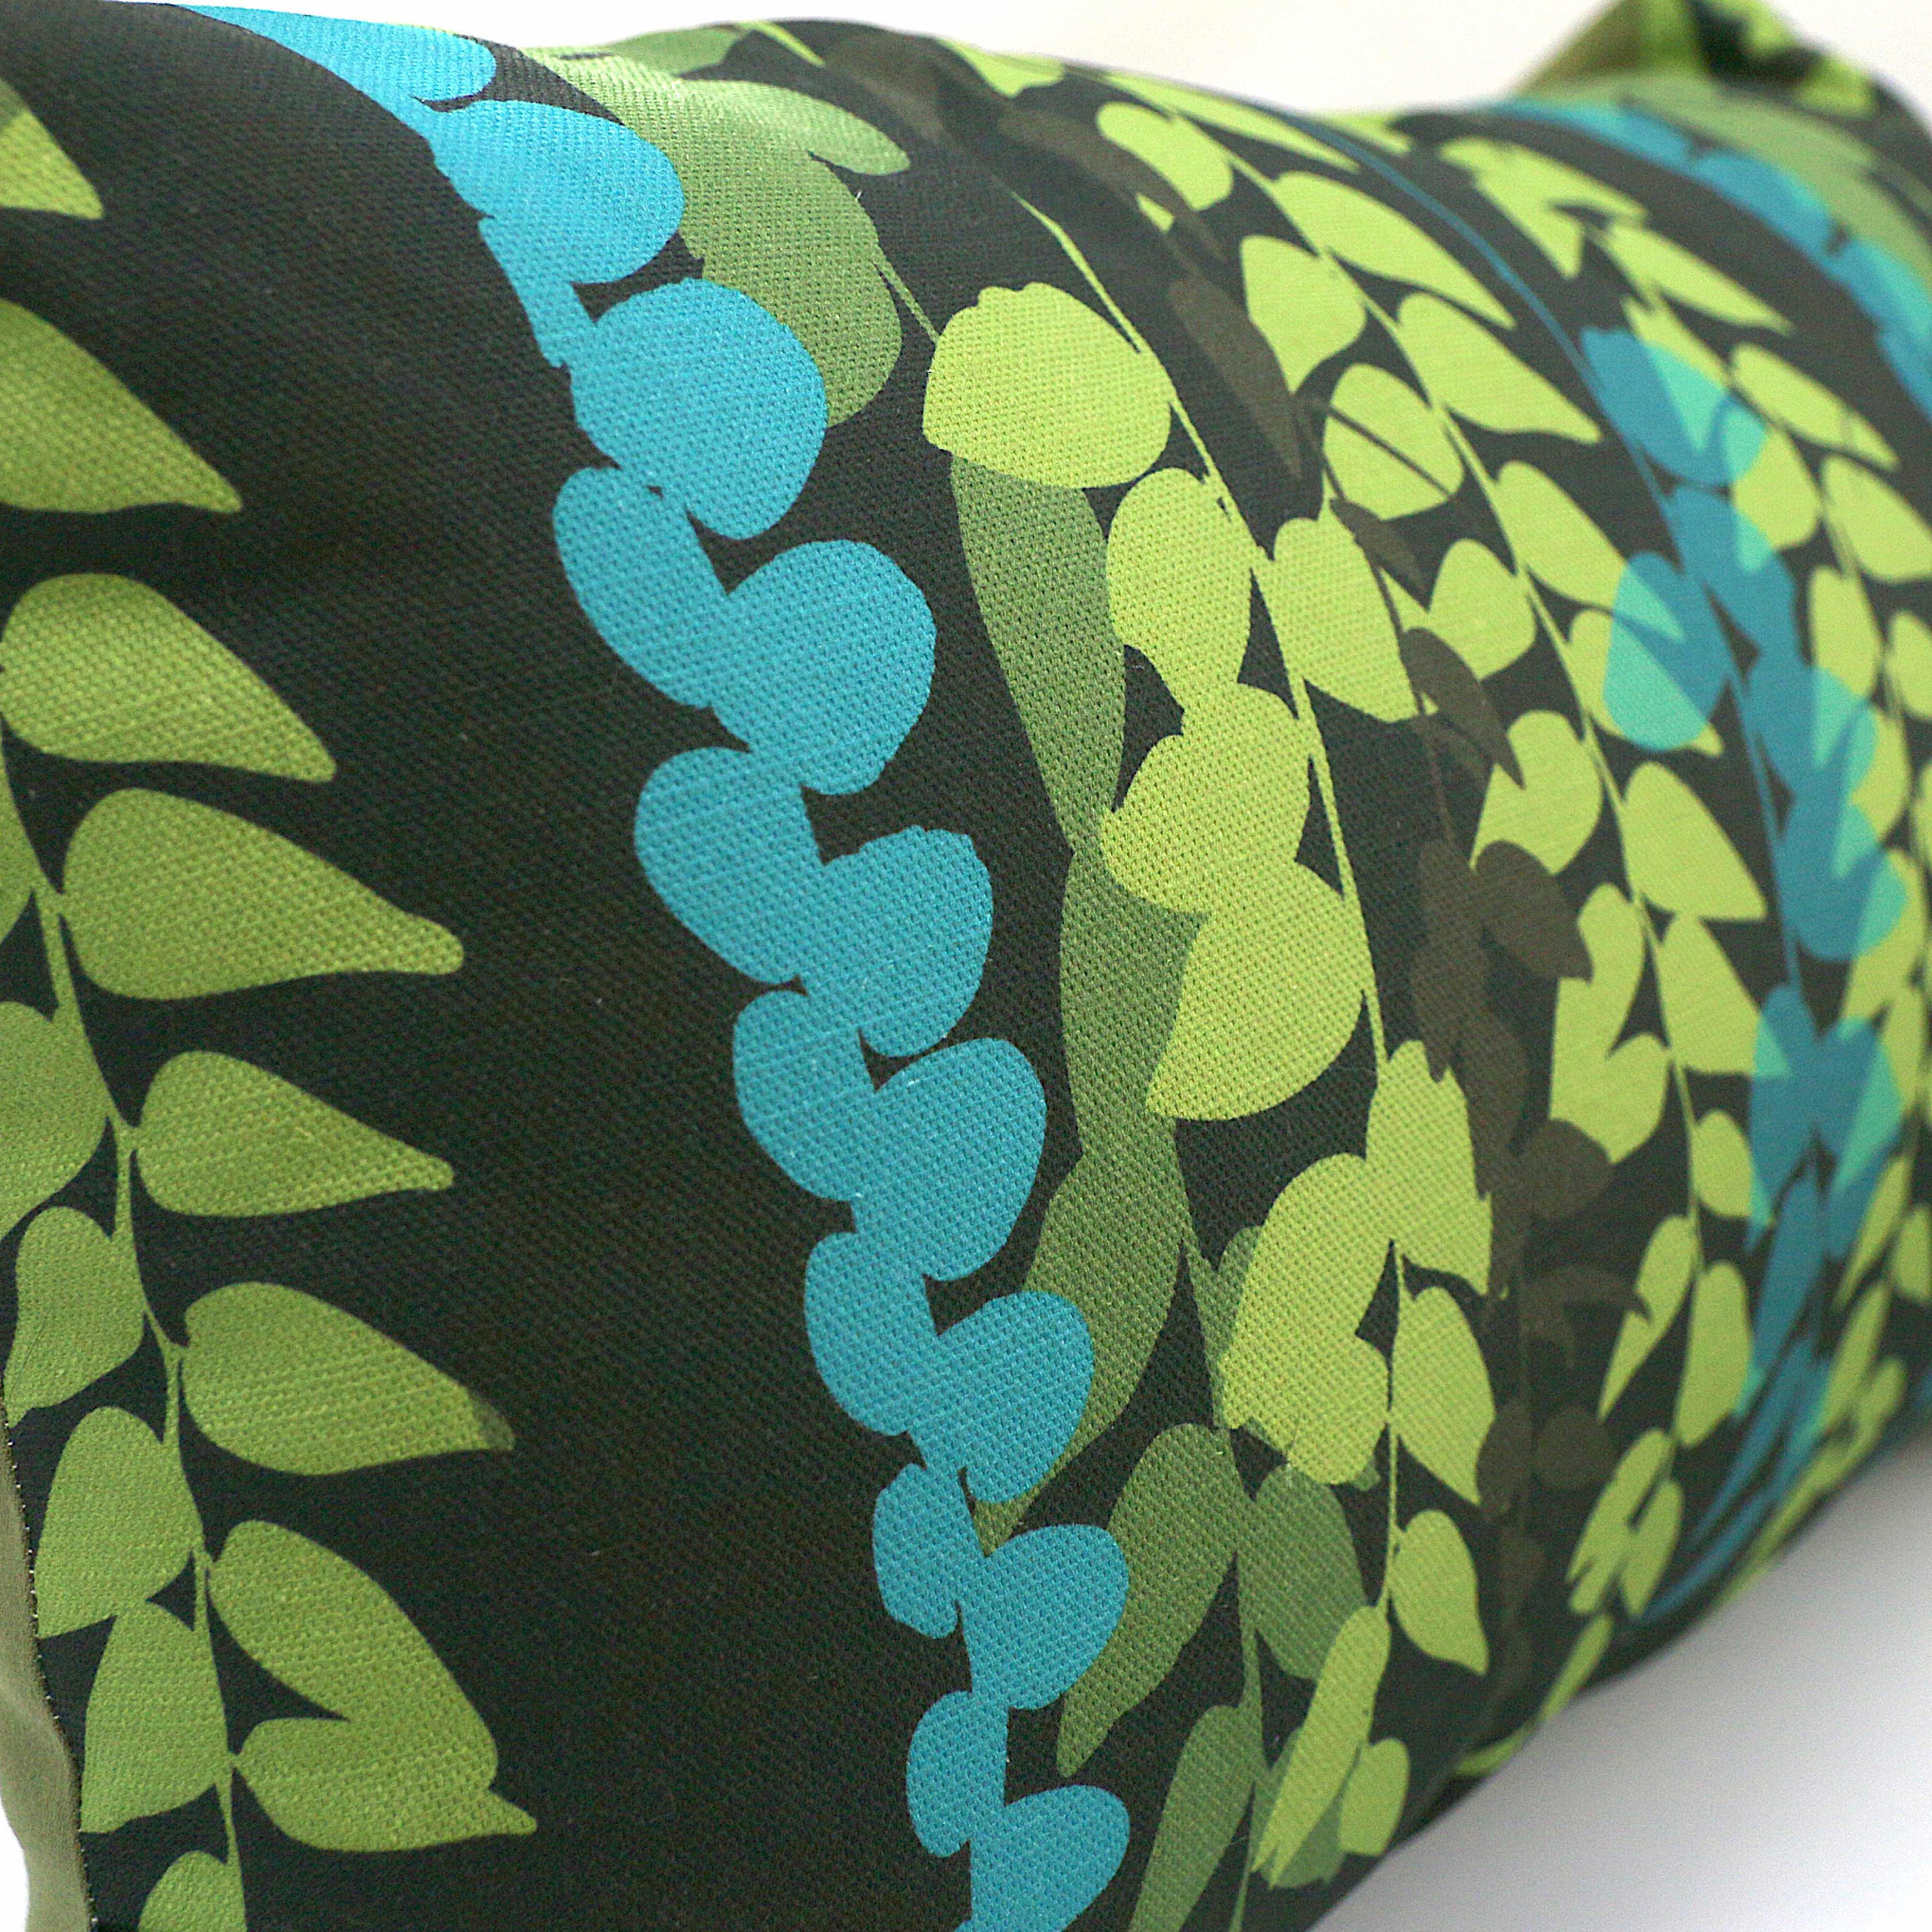 Trailing Vine Dark Cushion Green Olive Blue Rectangle | Etsy UK